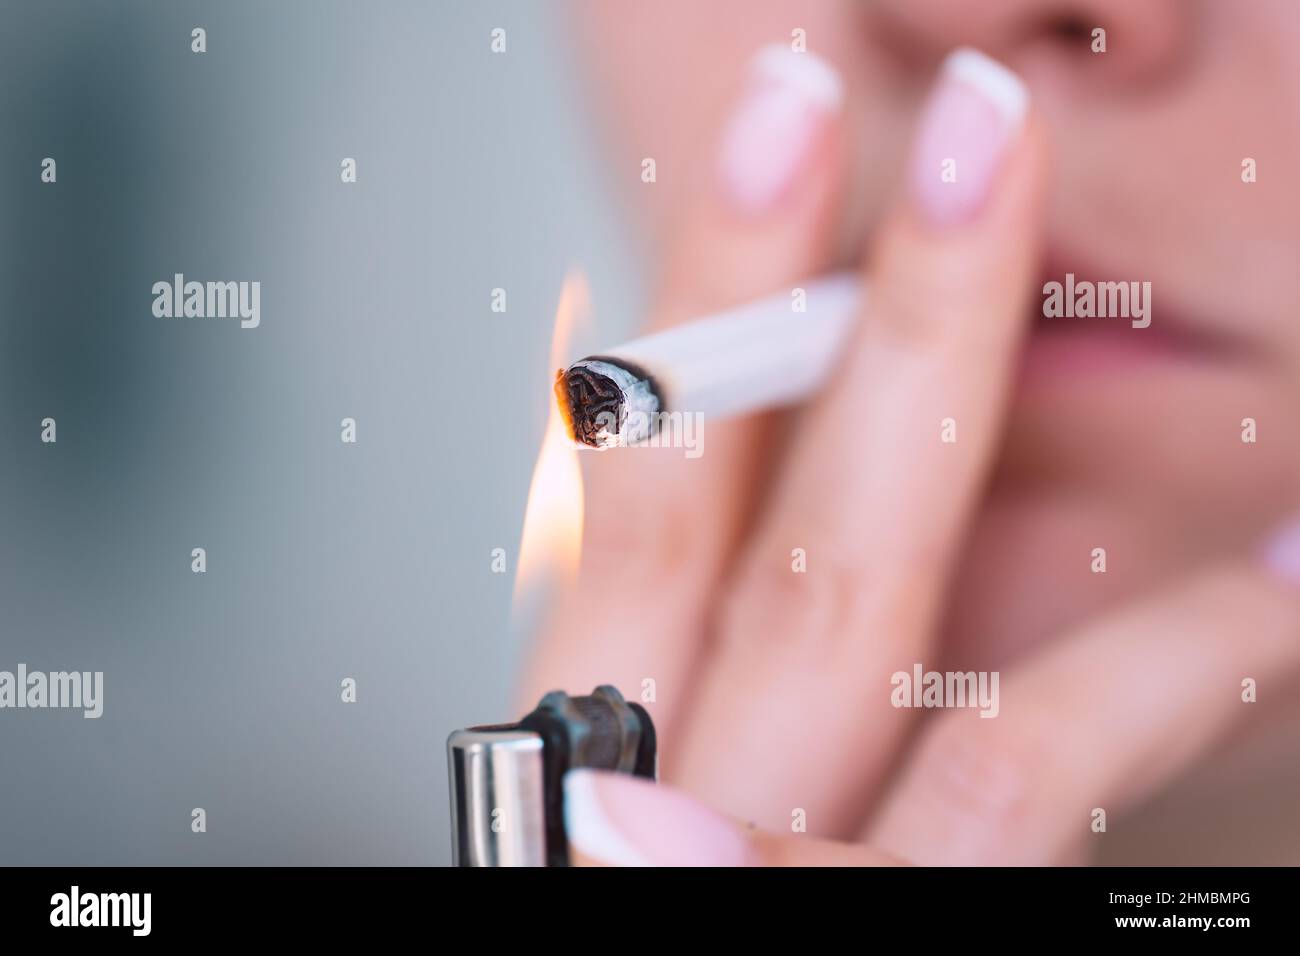 Nahaufnahme einer jungen Frau, die eine Zigarette mit Feuerzeug anzündet. Rauchen sucht und schlechte Gewohnheit Konzept Stockfoto